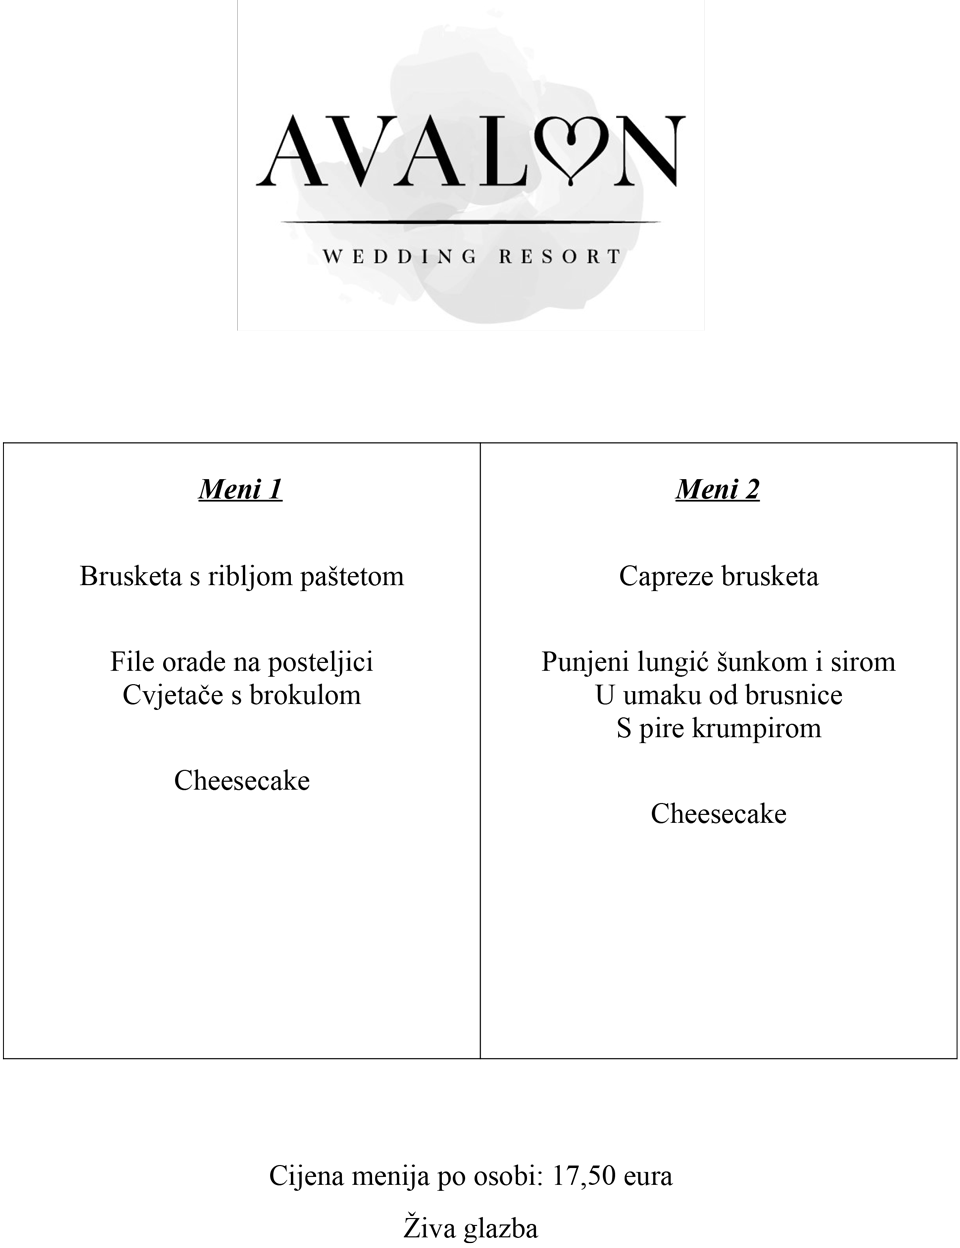 Wedding resort Avalon - Valentinovo meni